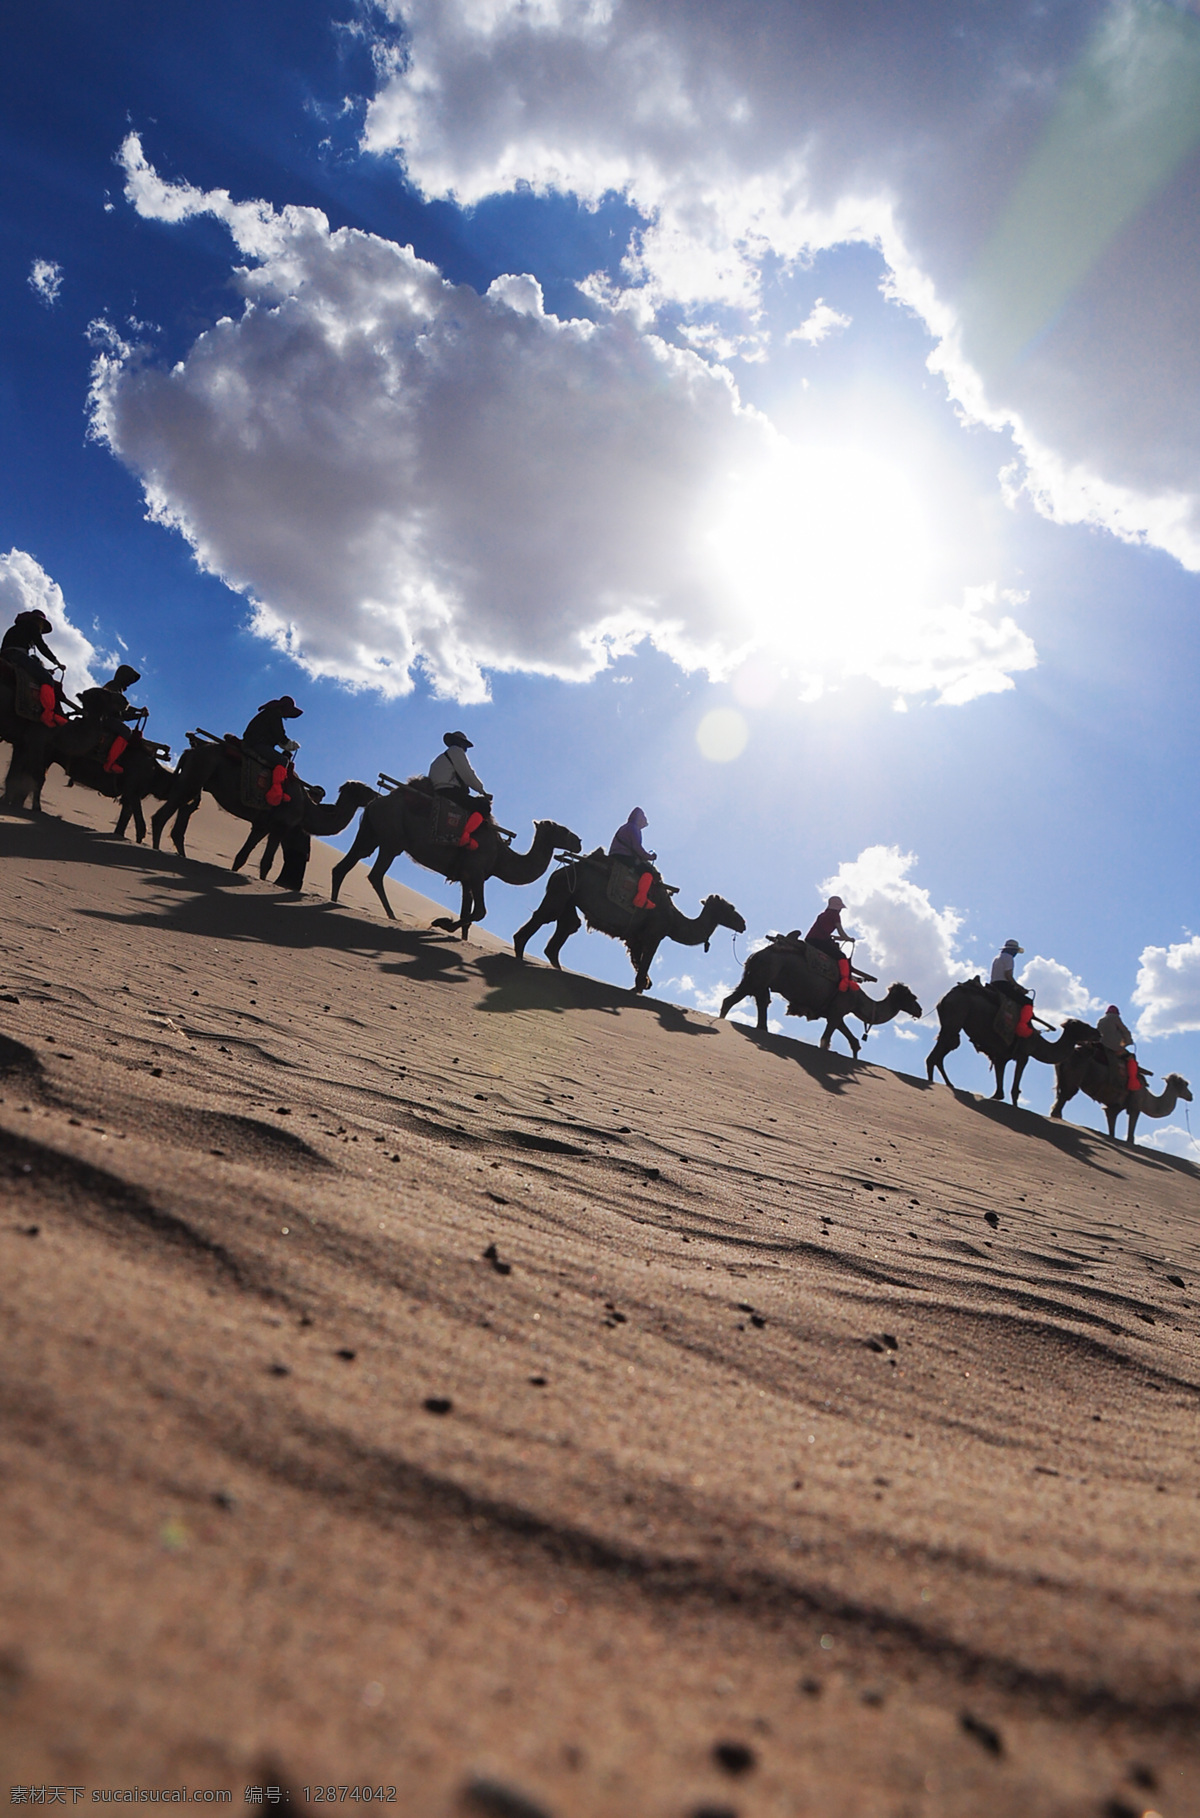 沙漠 里 行进 骆驼 沙漠里骆驼队 内蒙古 鄂尔多斯 达旗 达拉特旗 响沙湾 旅游 景区 金色的沙漠 蓝天 白云 乌云 沙丘 沙山 沙子 沙坡 沙滩 自然 沙纹 波纹 驼队 自然景观 自然风景